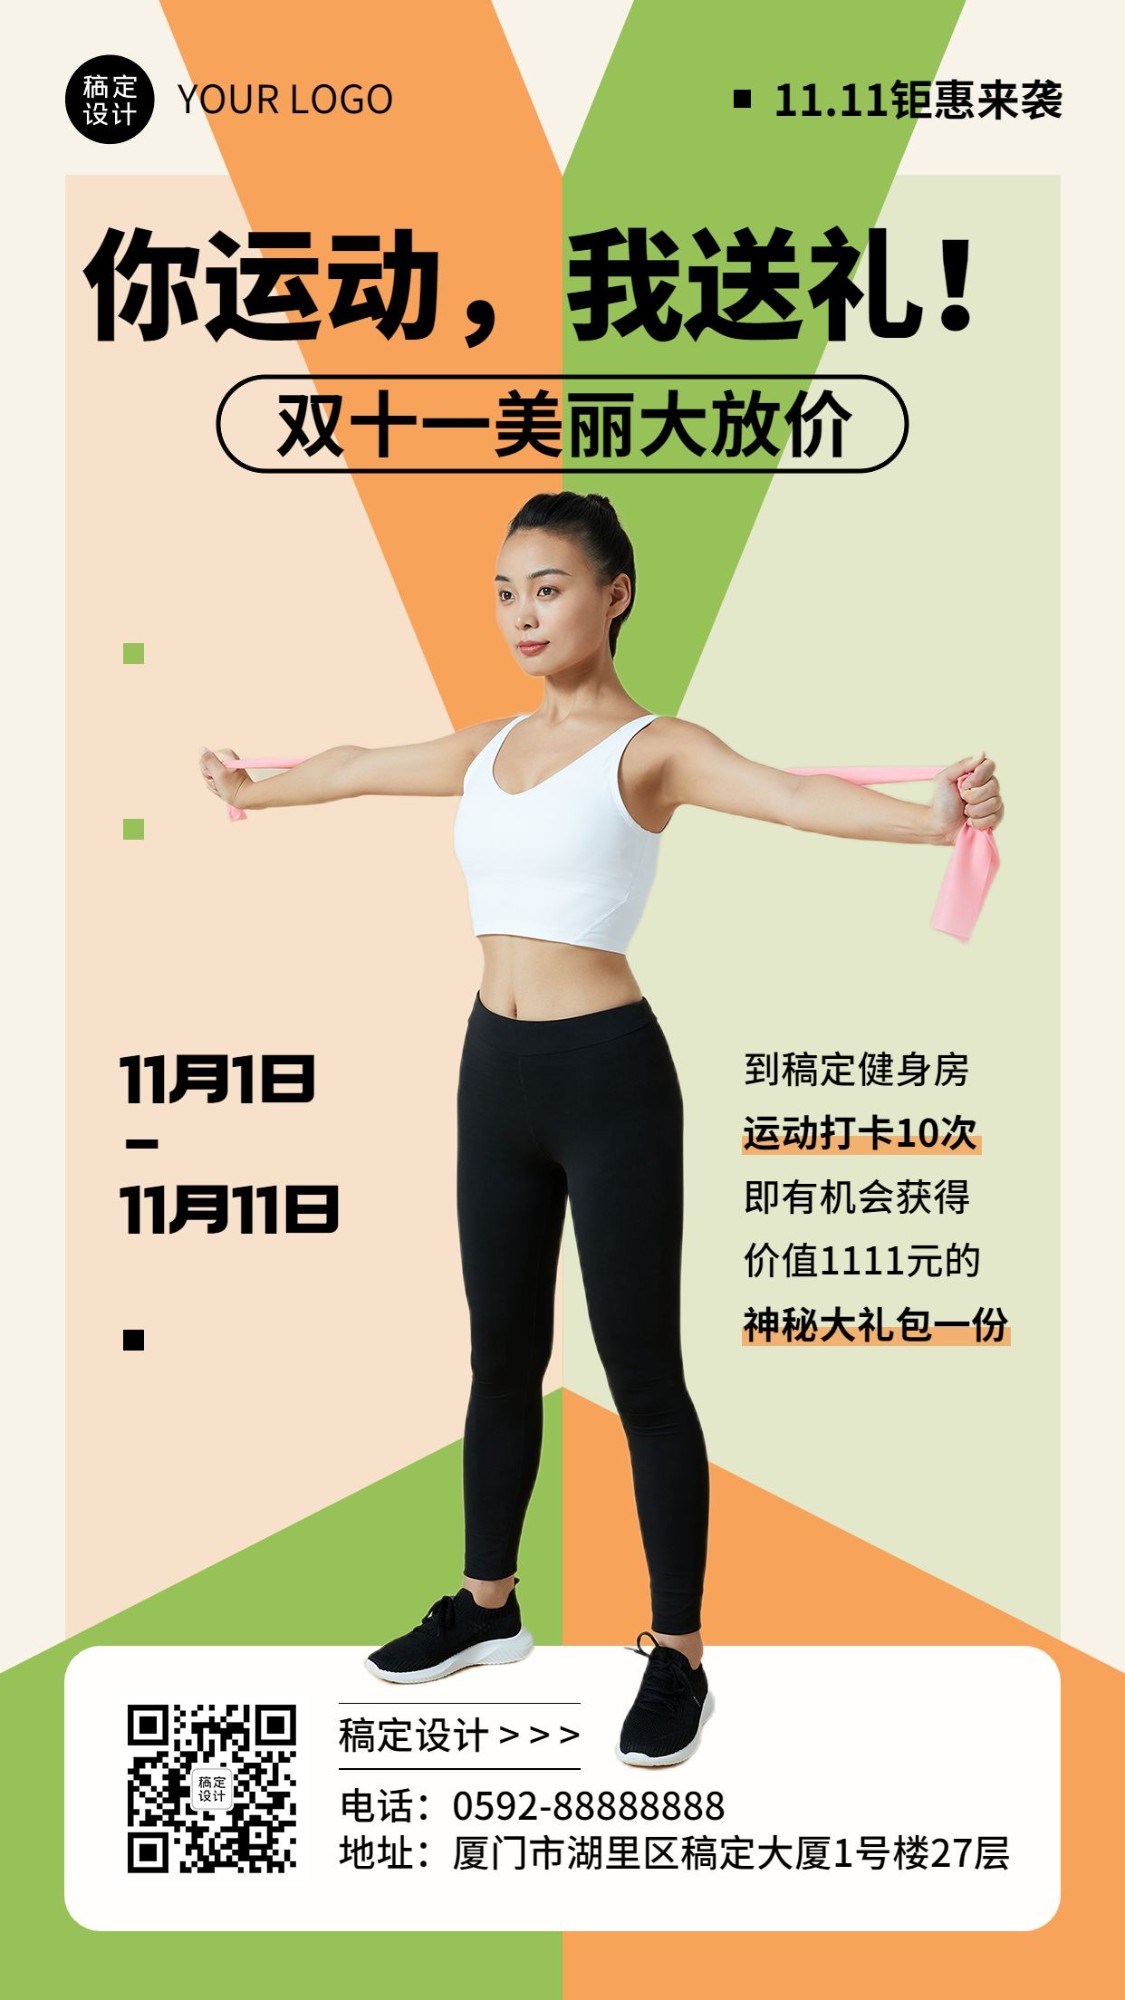 双十一运动健身课程促销活动营销手机海报预览效果